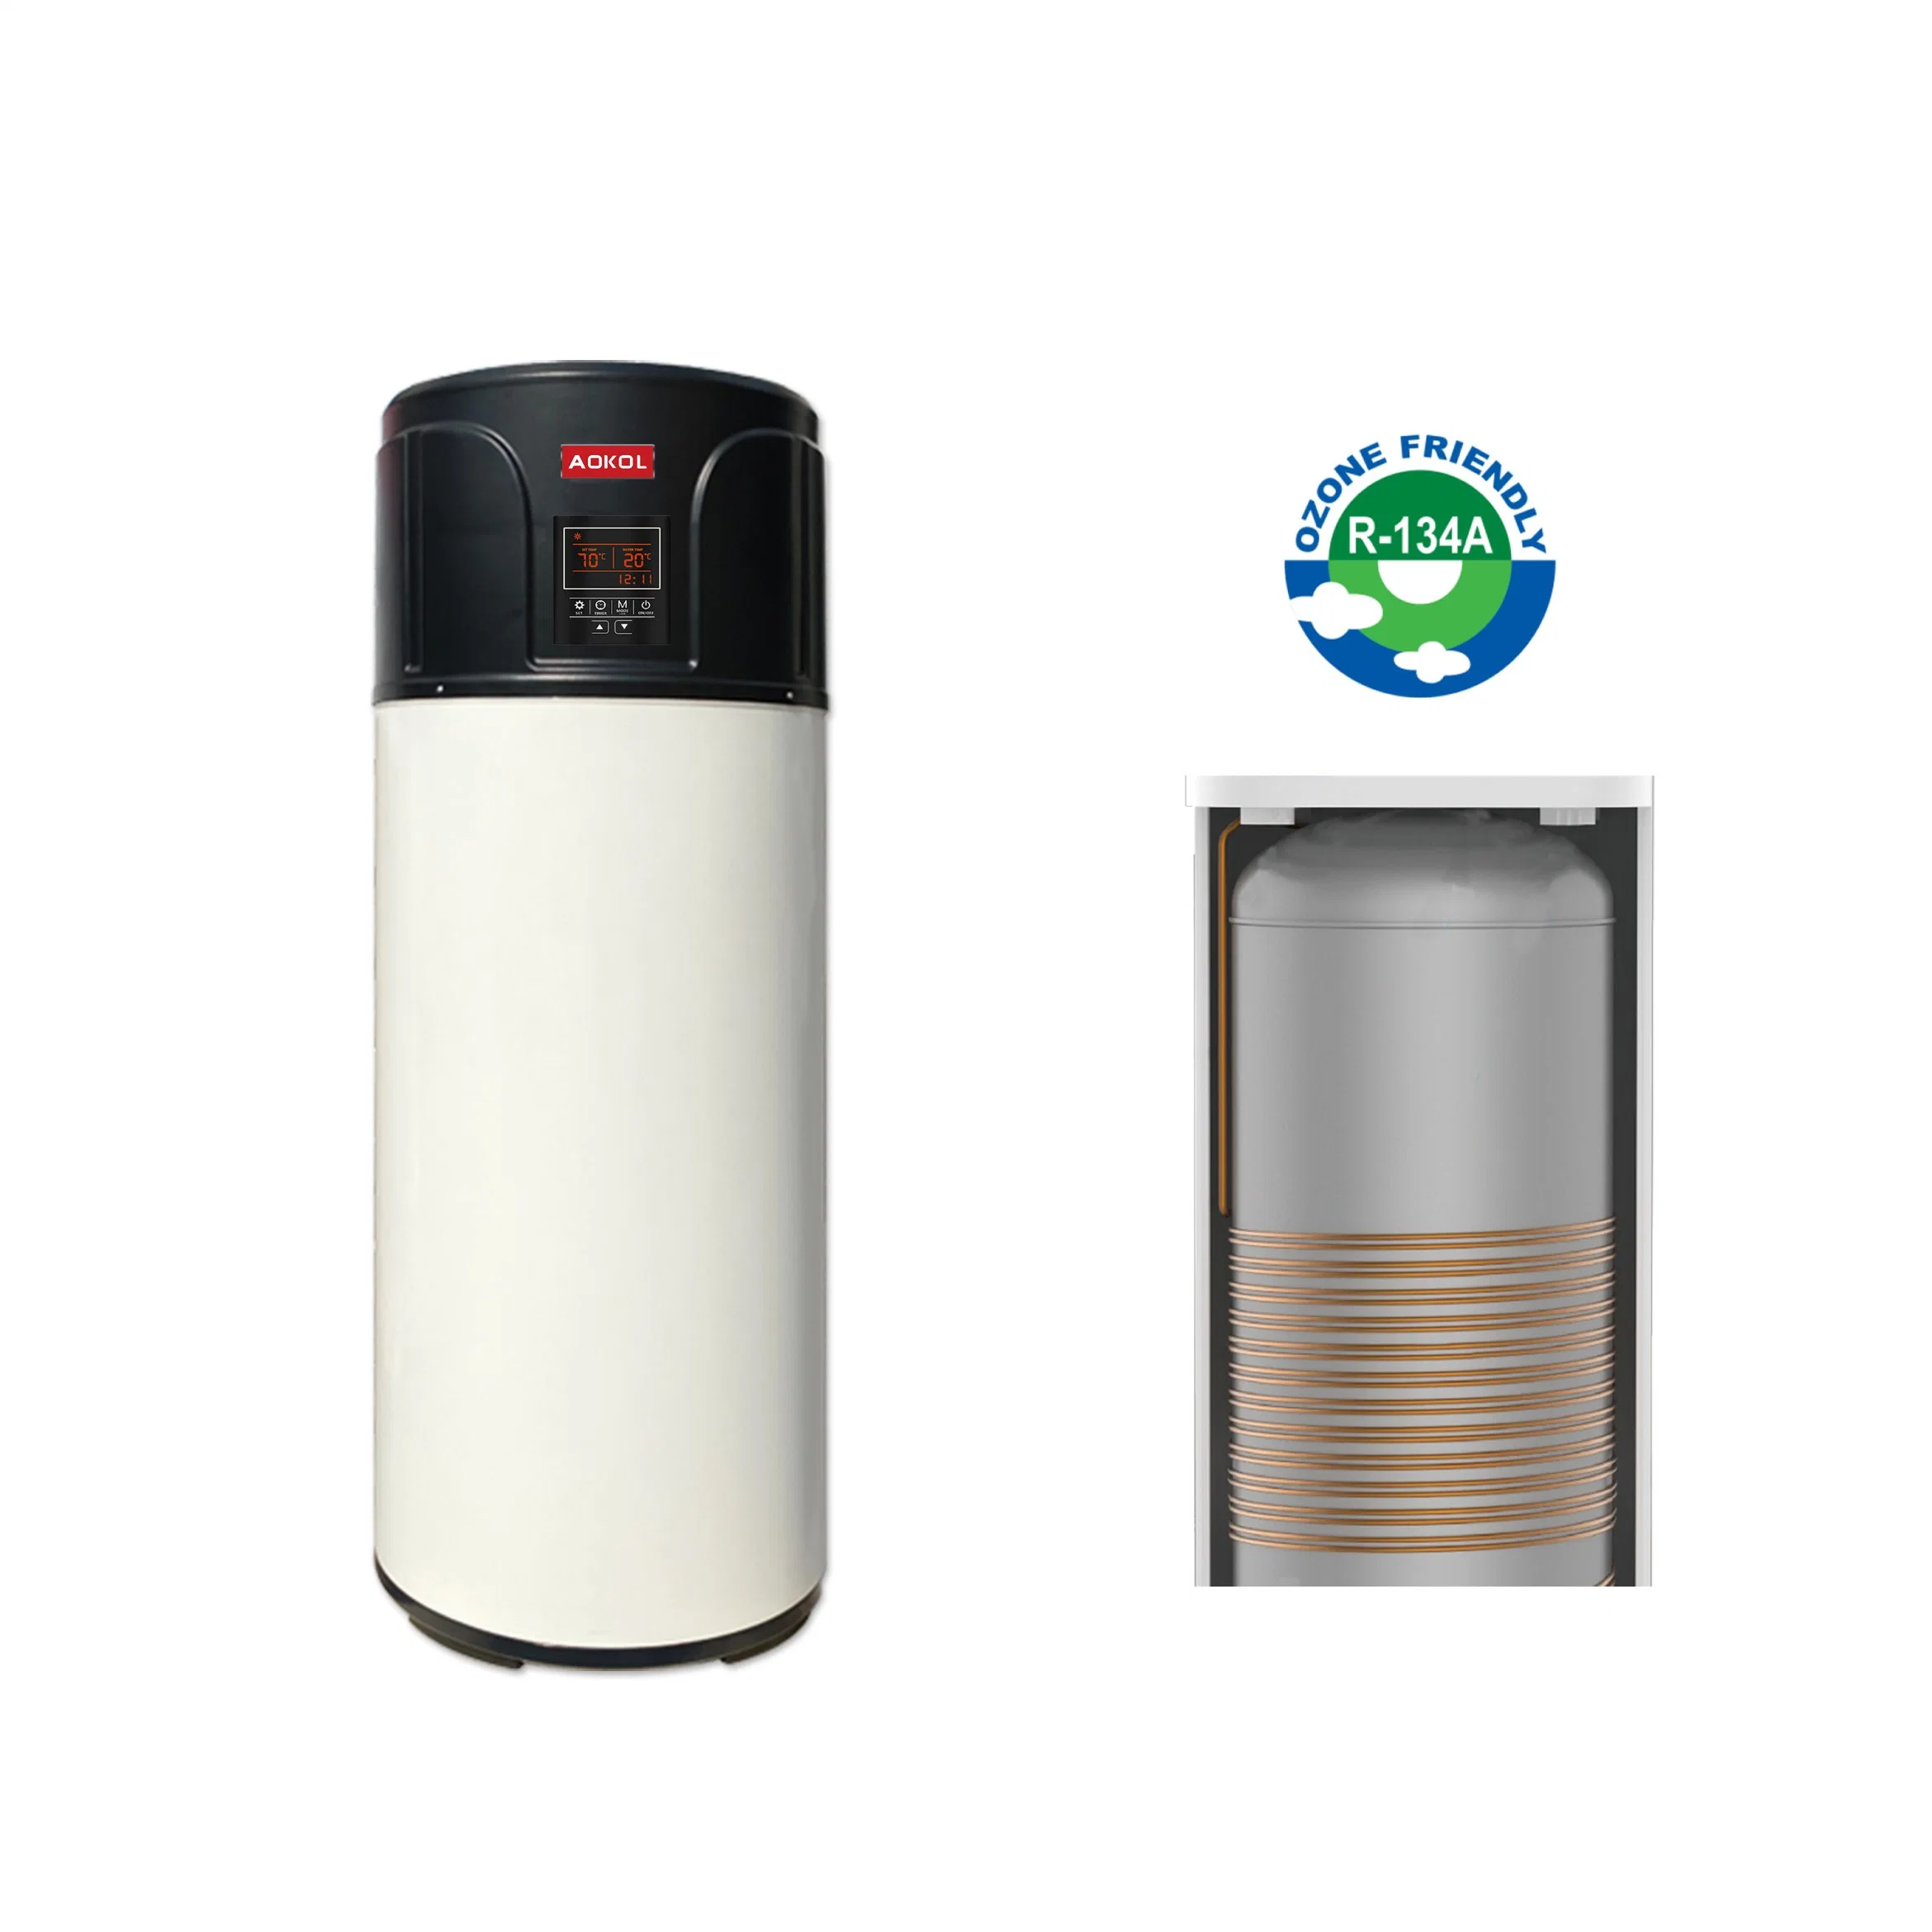 China Aokol Como vender um novo aquecedor de água com bomba de calor ar-Wter, aquecedor de água doméstica. Água Solor Ouvinte.